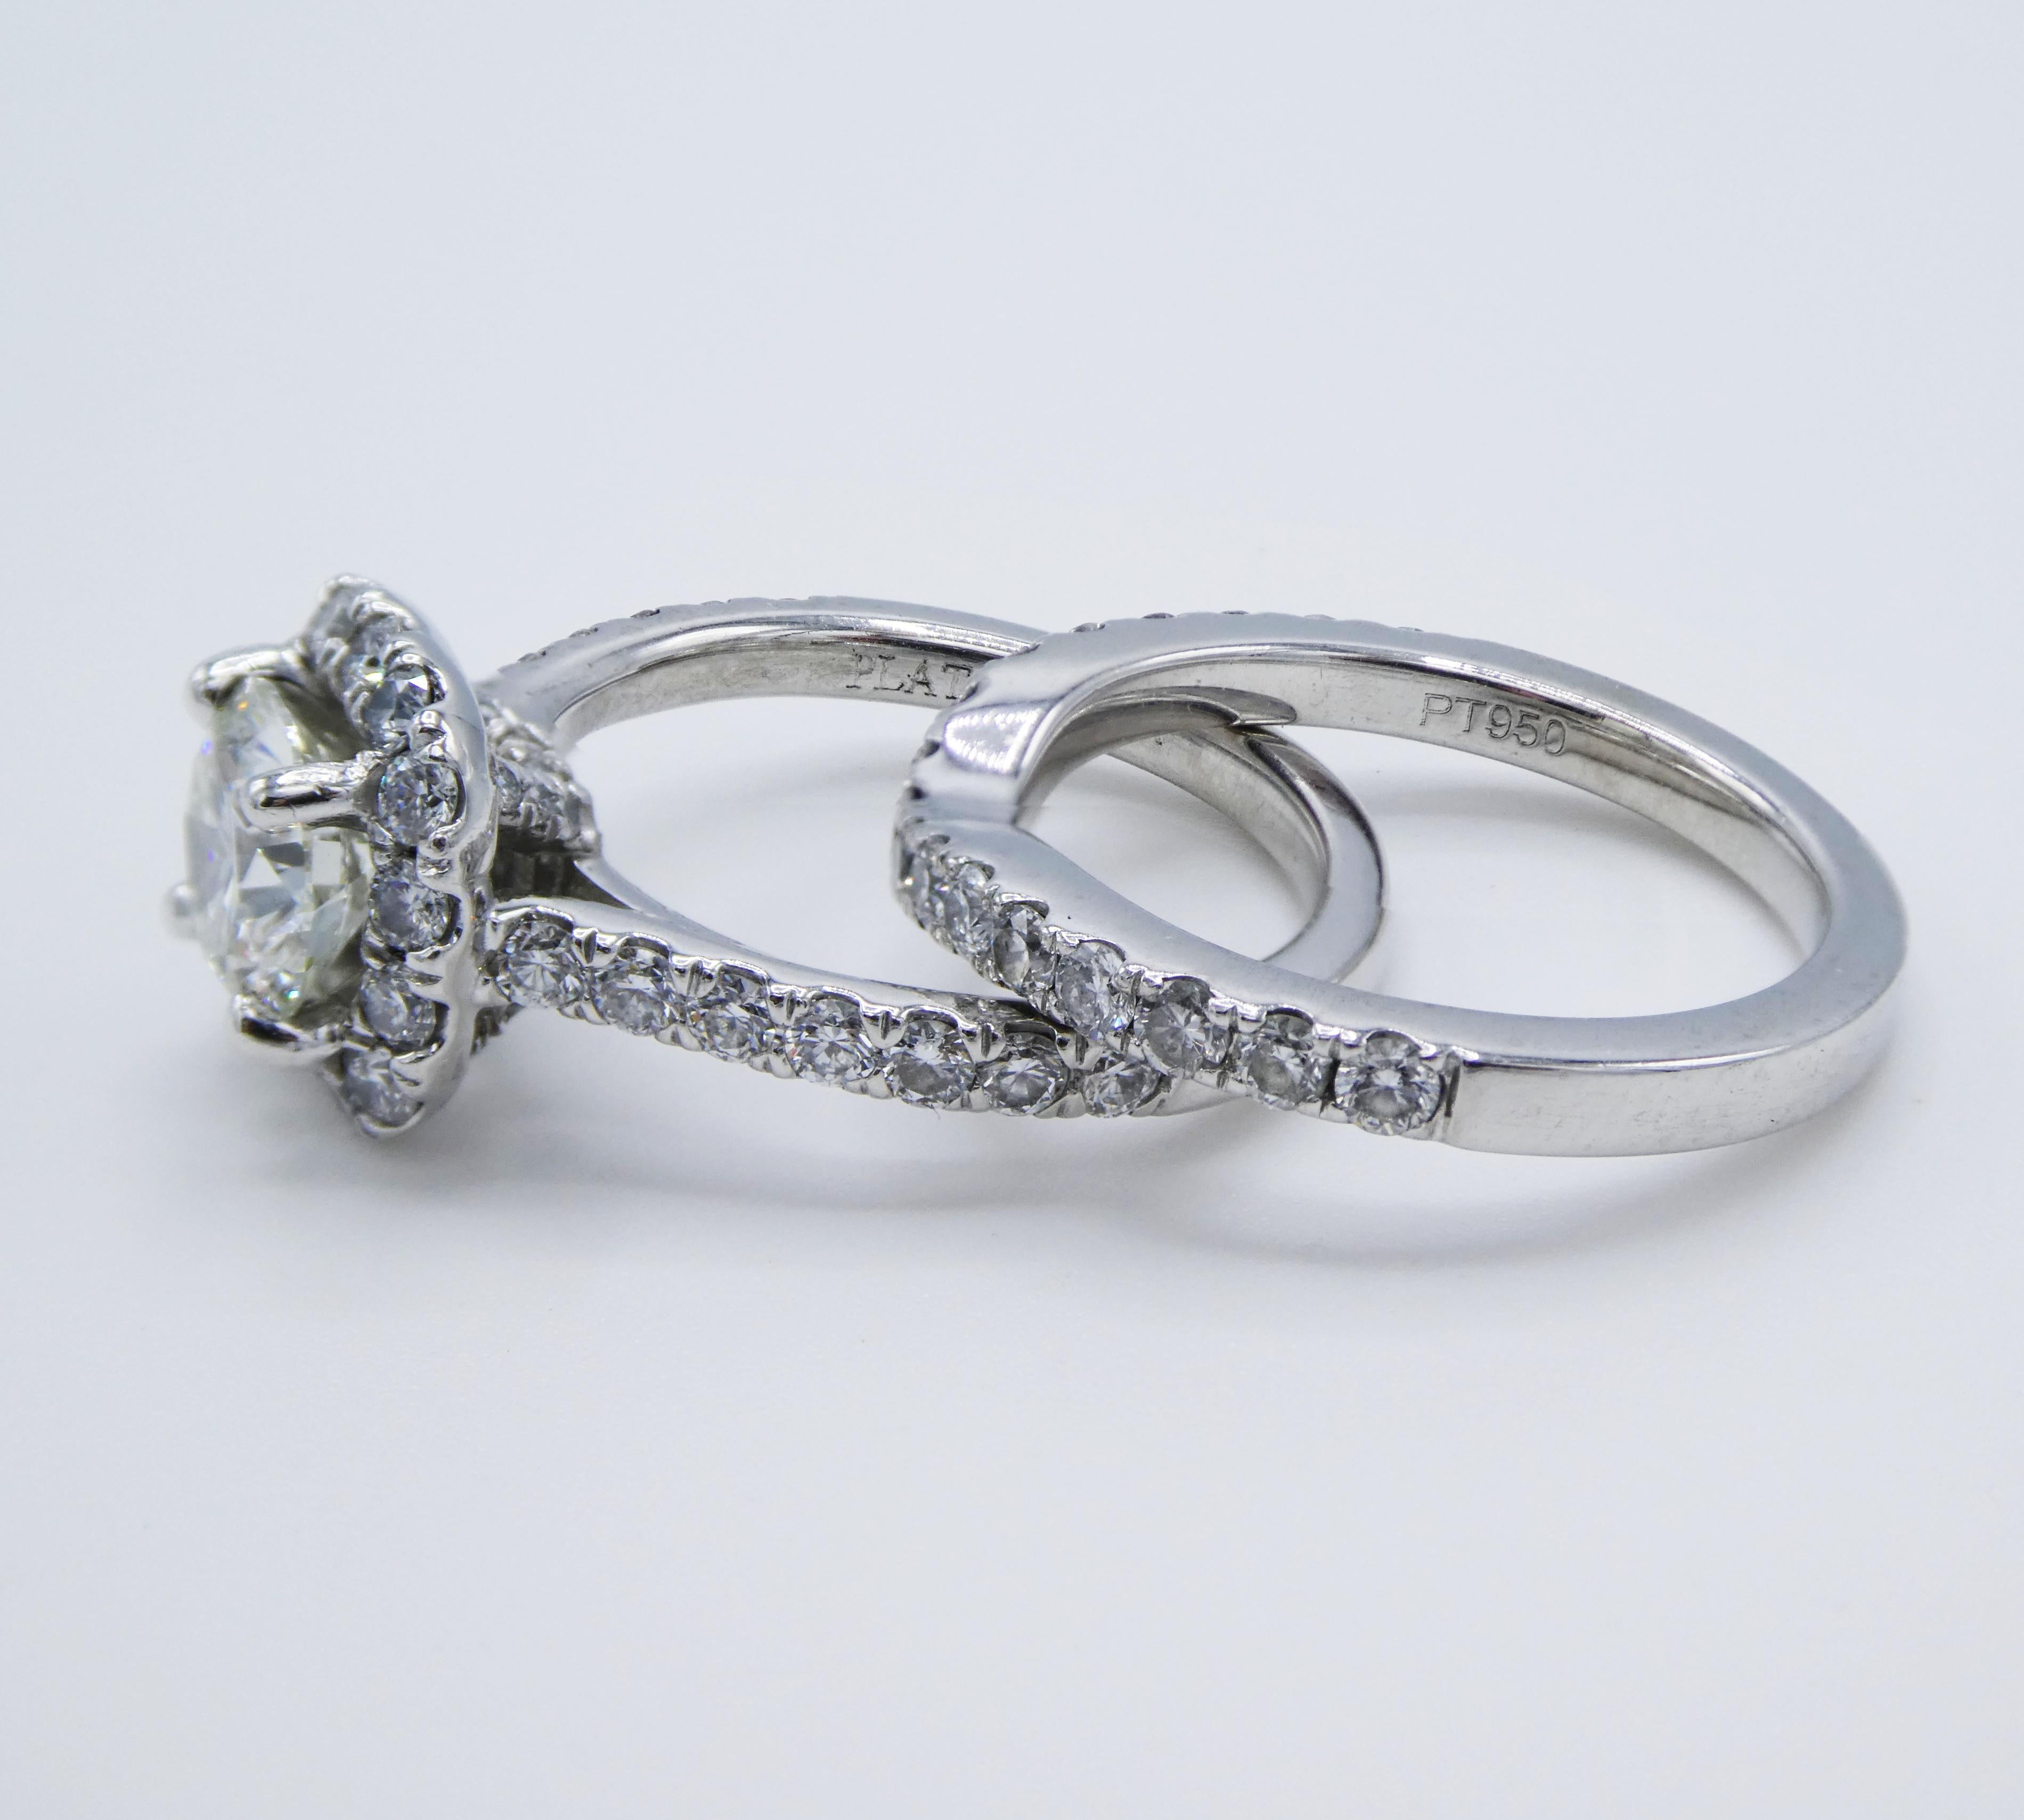 Round Cut GIA Certified 1.24 Carat Platinum Diamond Halo Engagement Ring Wedding Set